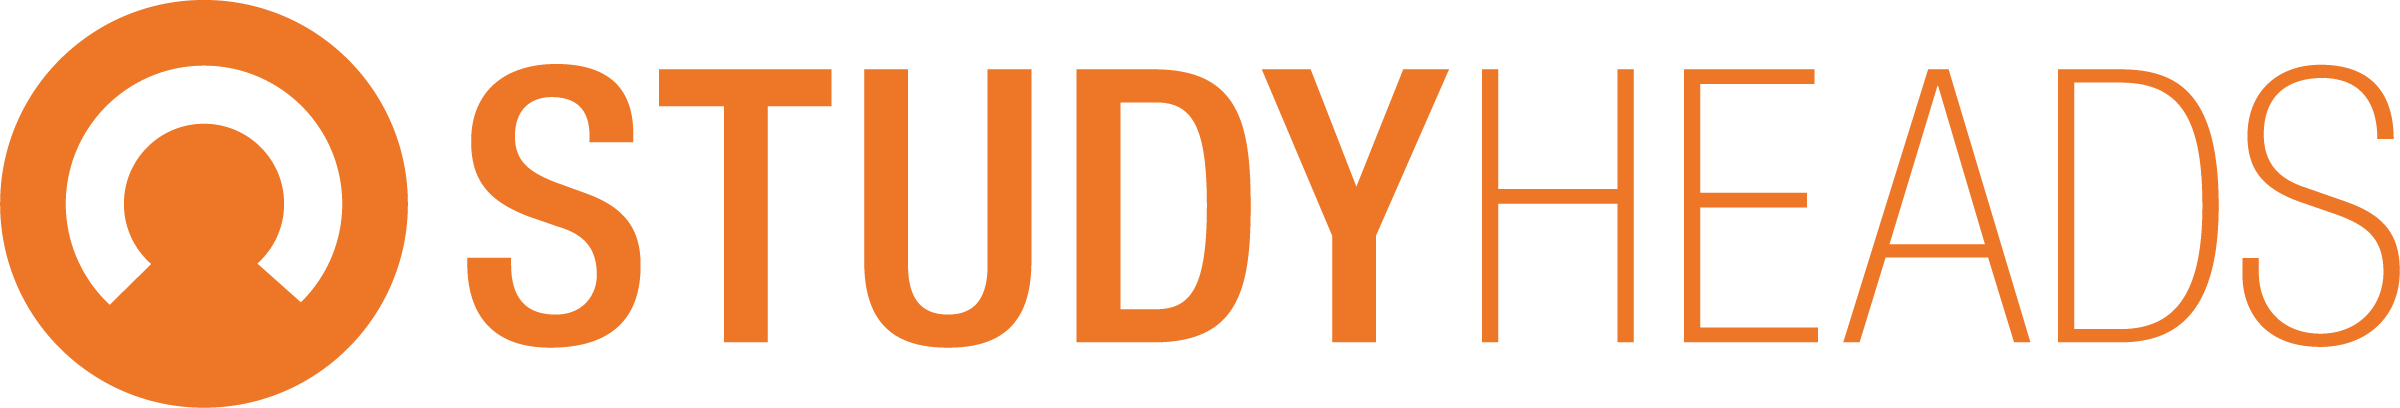 Der beste Arbeitgeber für Studenten – GVO Studyheads Logo